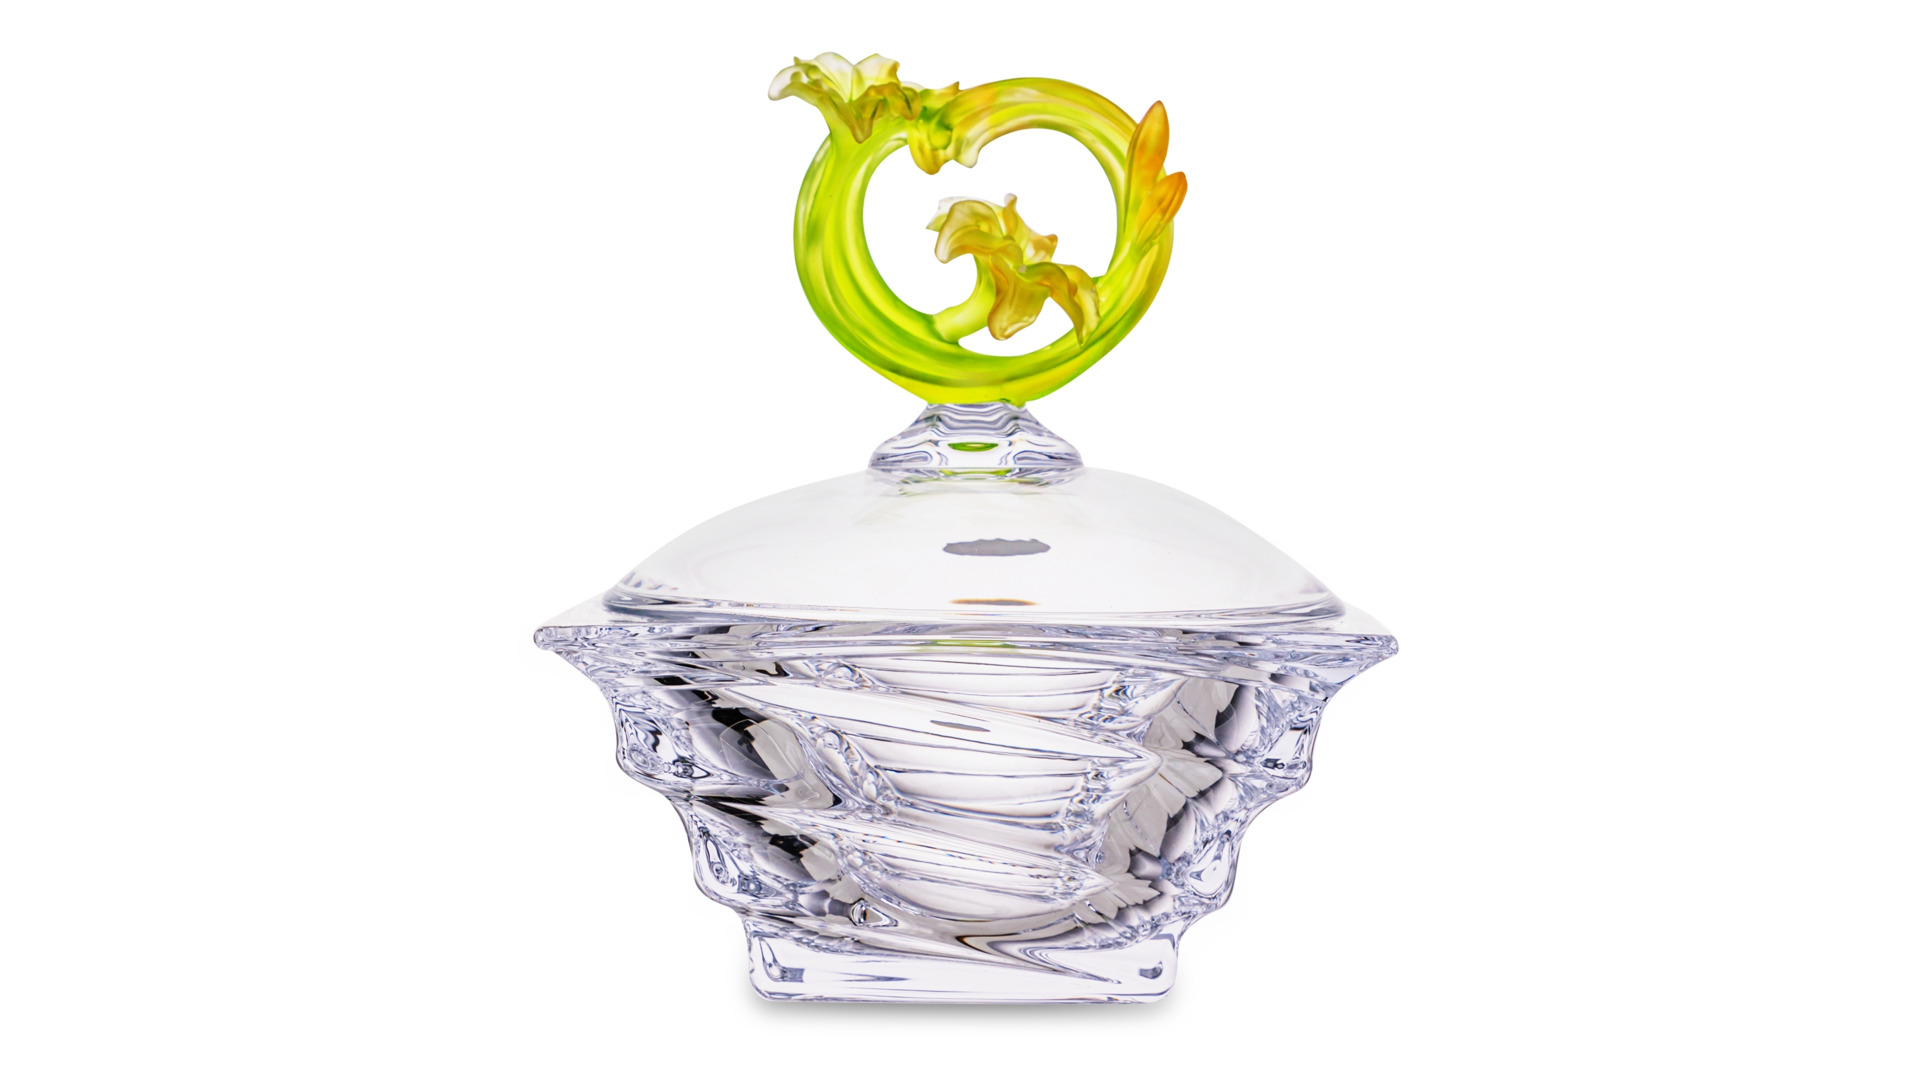 Конфетница с крышкой Cristal de Paris Миллениум 18 см, h15 см, крышка с зеленым цветком